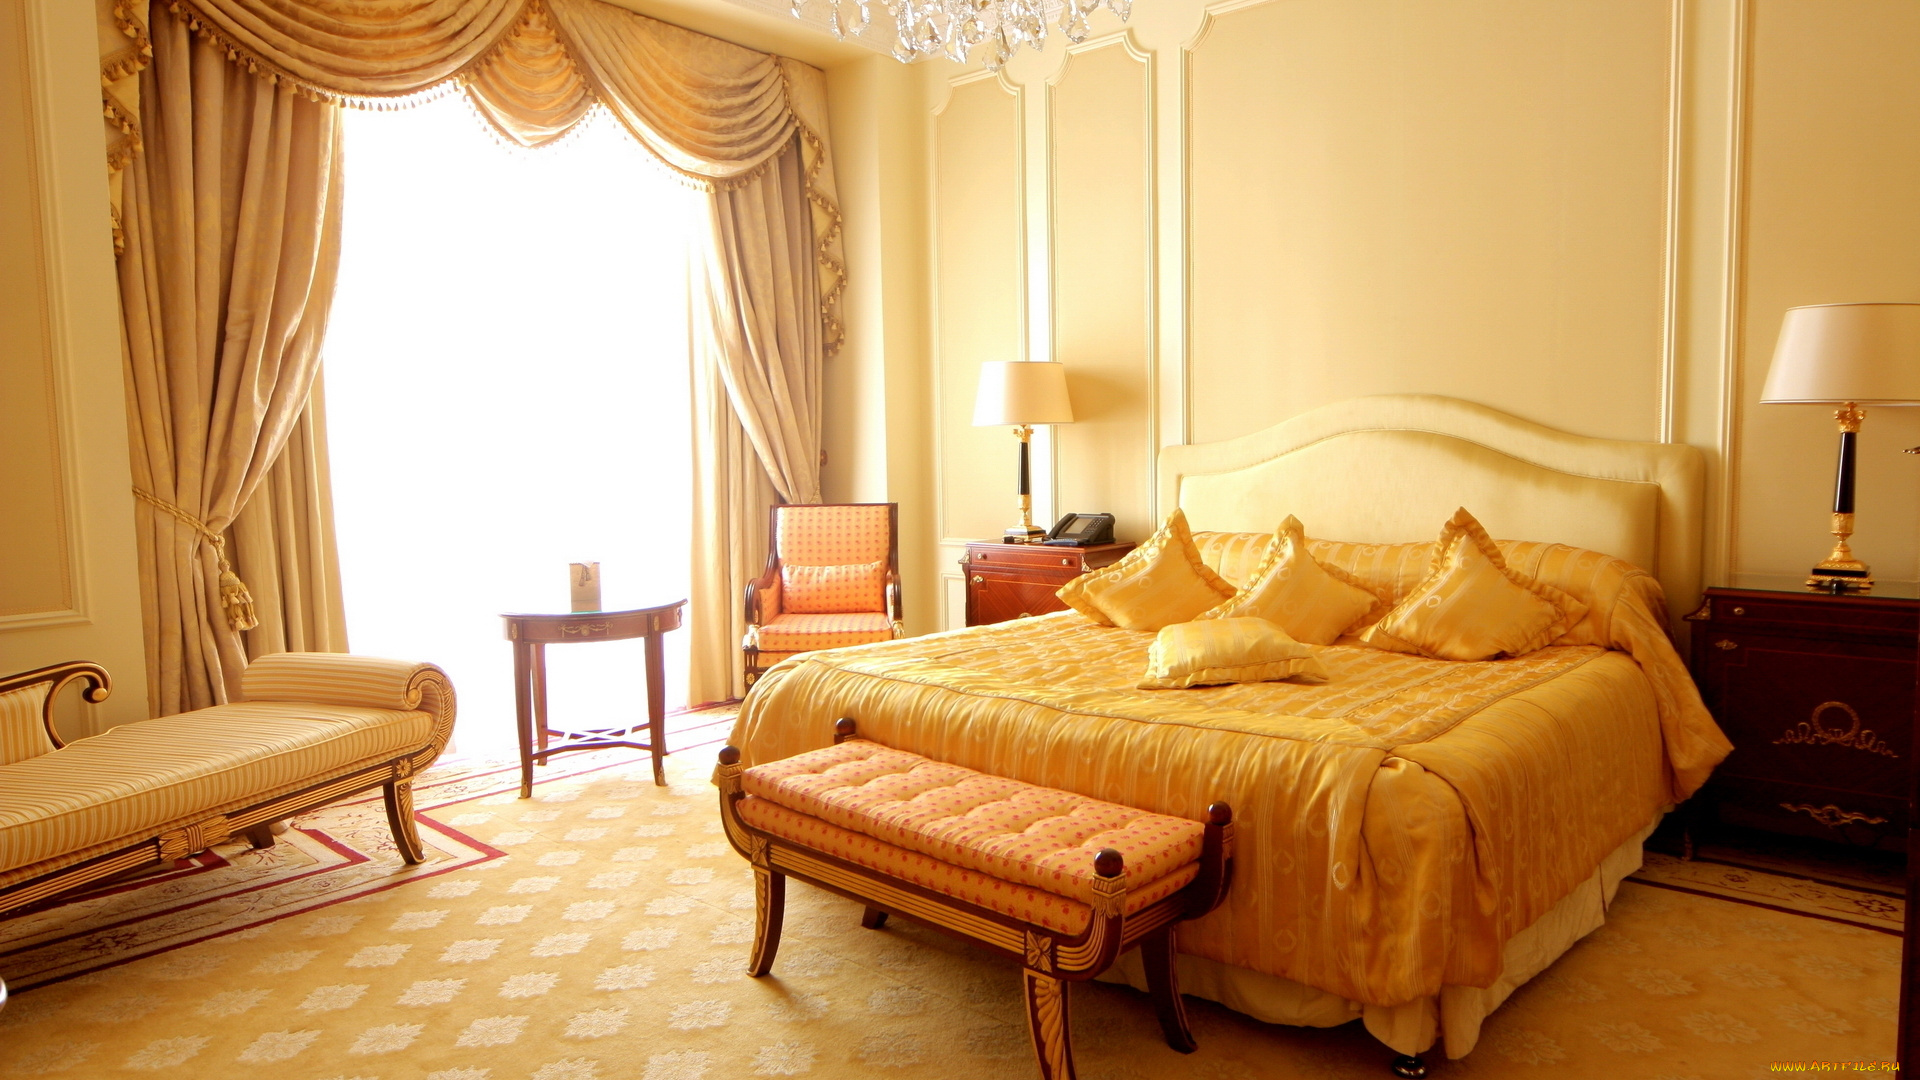 интерьер, спальня, стиль, дизайн, квартира, подушки, комната, кровать, кресло, диван, занавеска, лампа, желтое